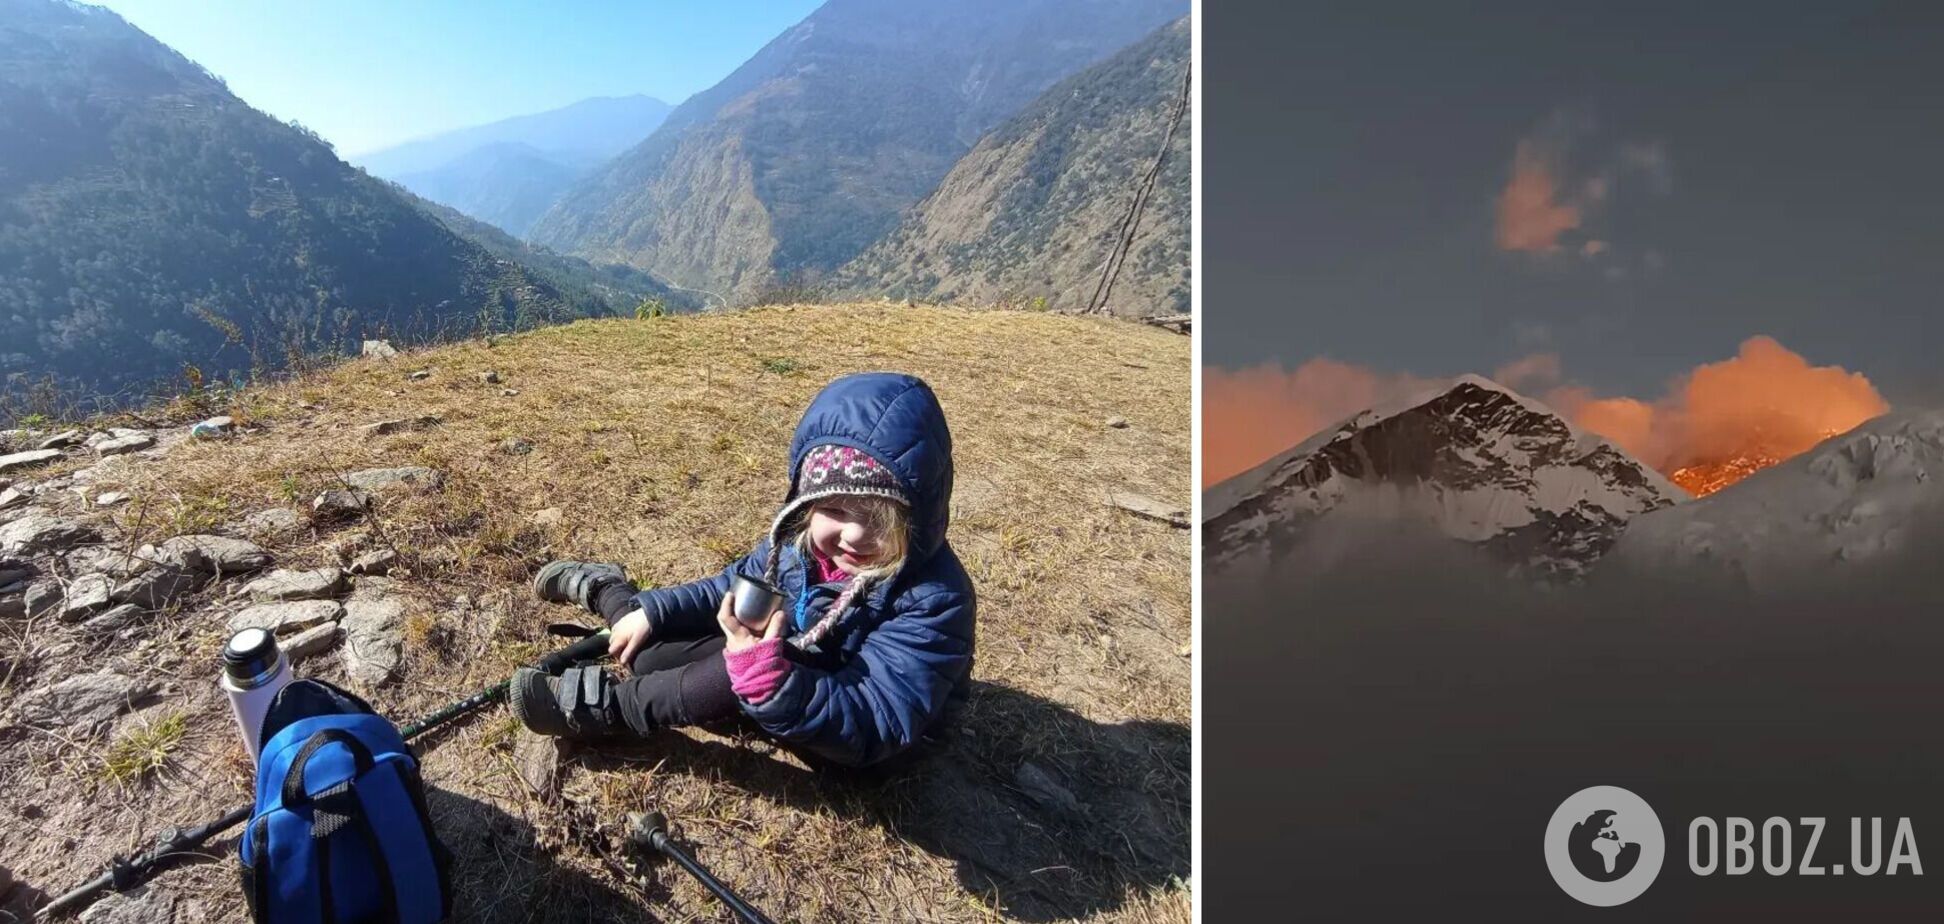 Чотирирічна дівчинка підкорила Еверест, встановивши світовий рекорд: вона піднялася без жодної допомоги. Фото